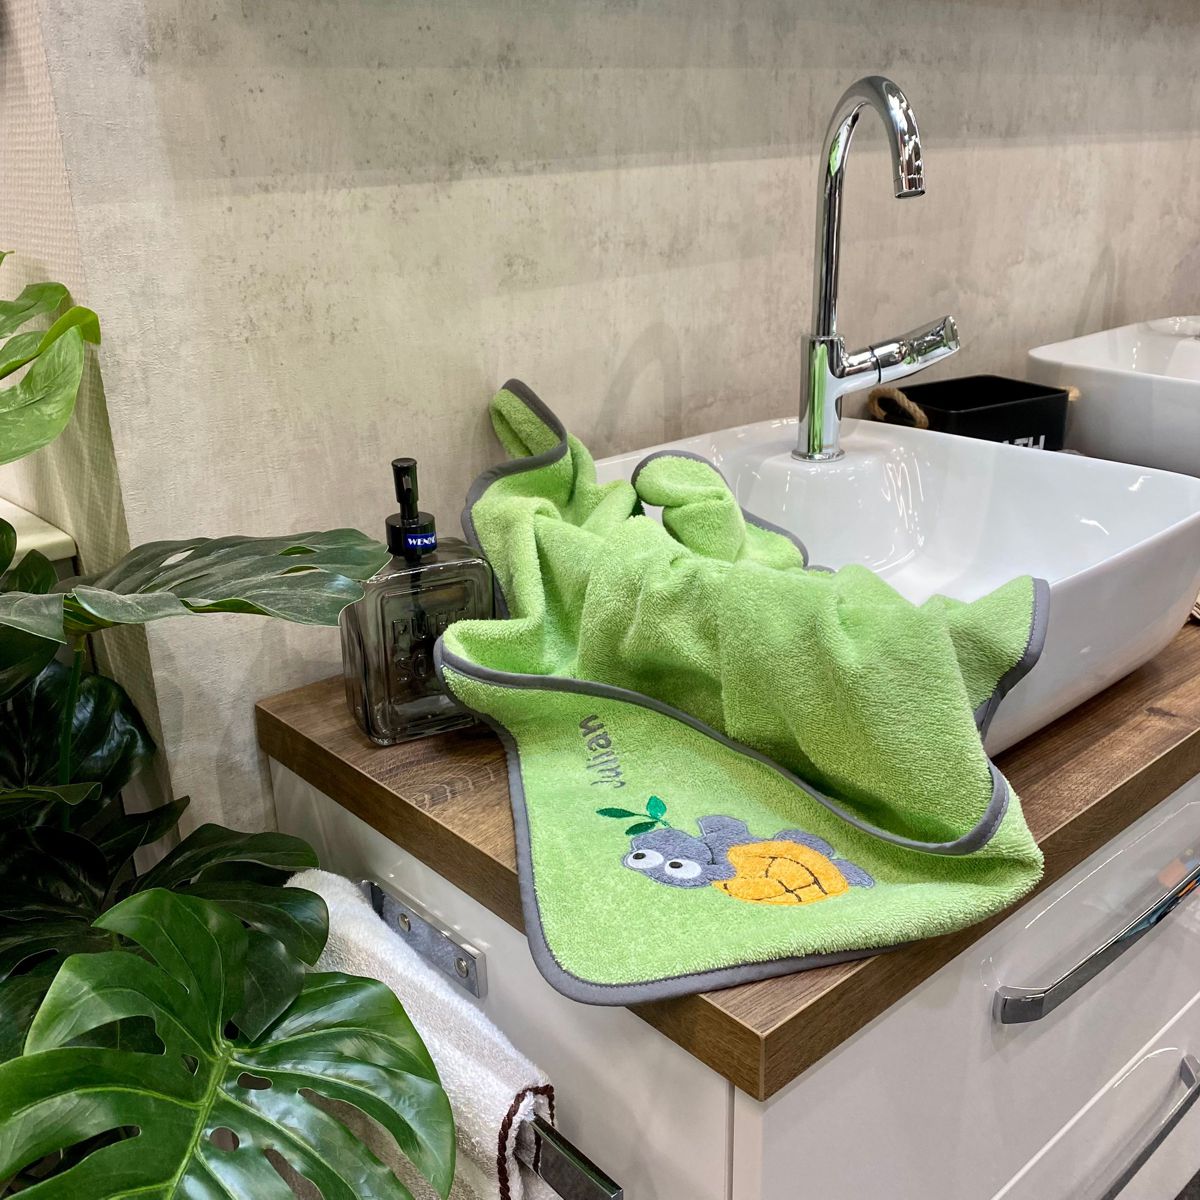 BIO-Handtuch Schildkröte opalgrün liegt auf Waschbecken